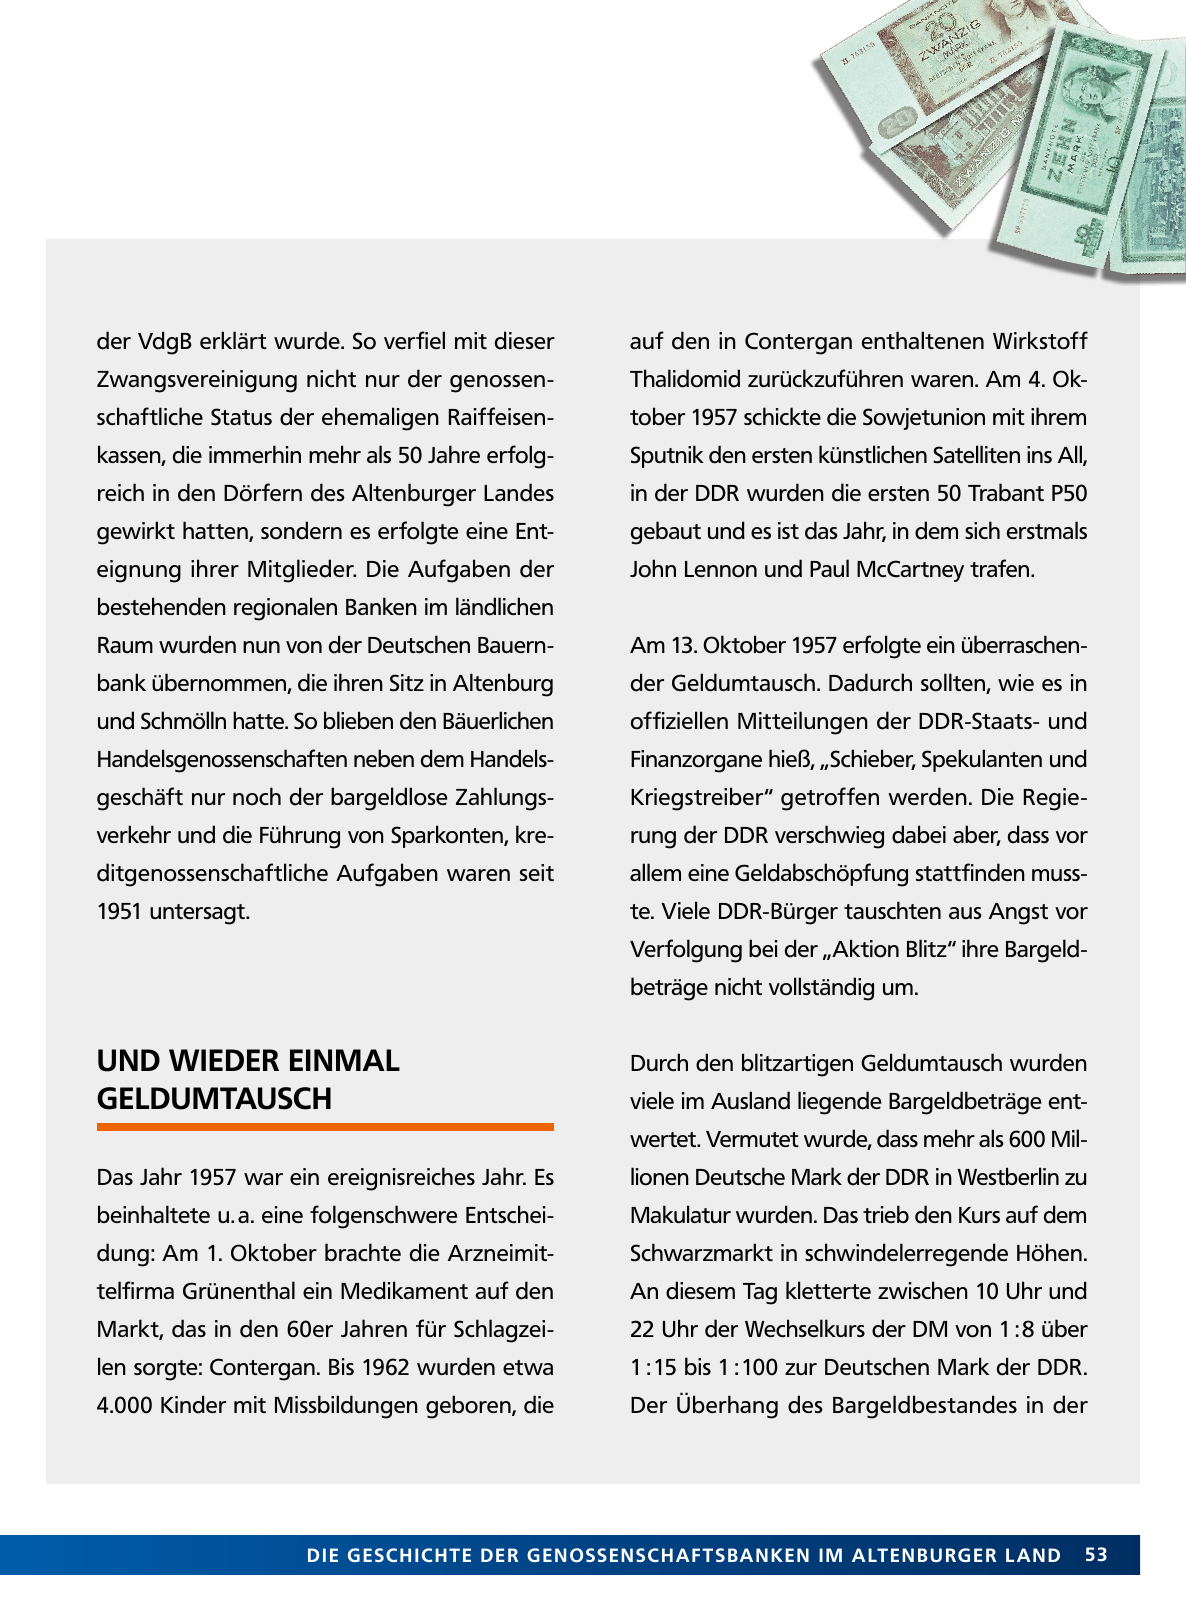 Vorschau Von der Idee, sich selbst zu helfen – 150 Jahre genossenschaftliches Bankwesen im Altenburger Land Seite 53